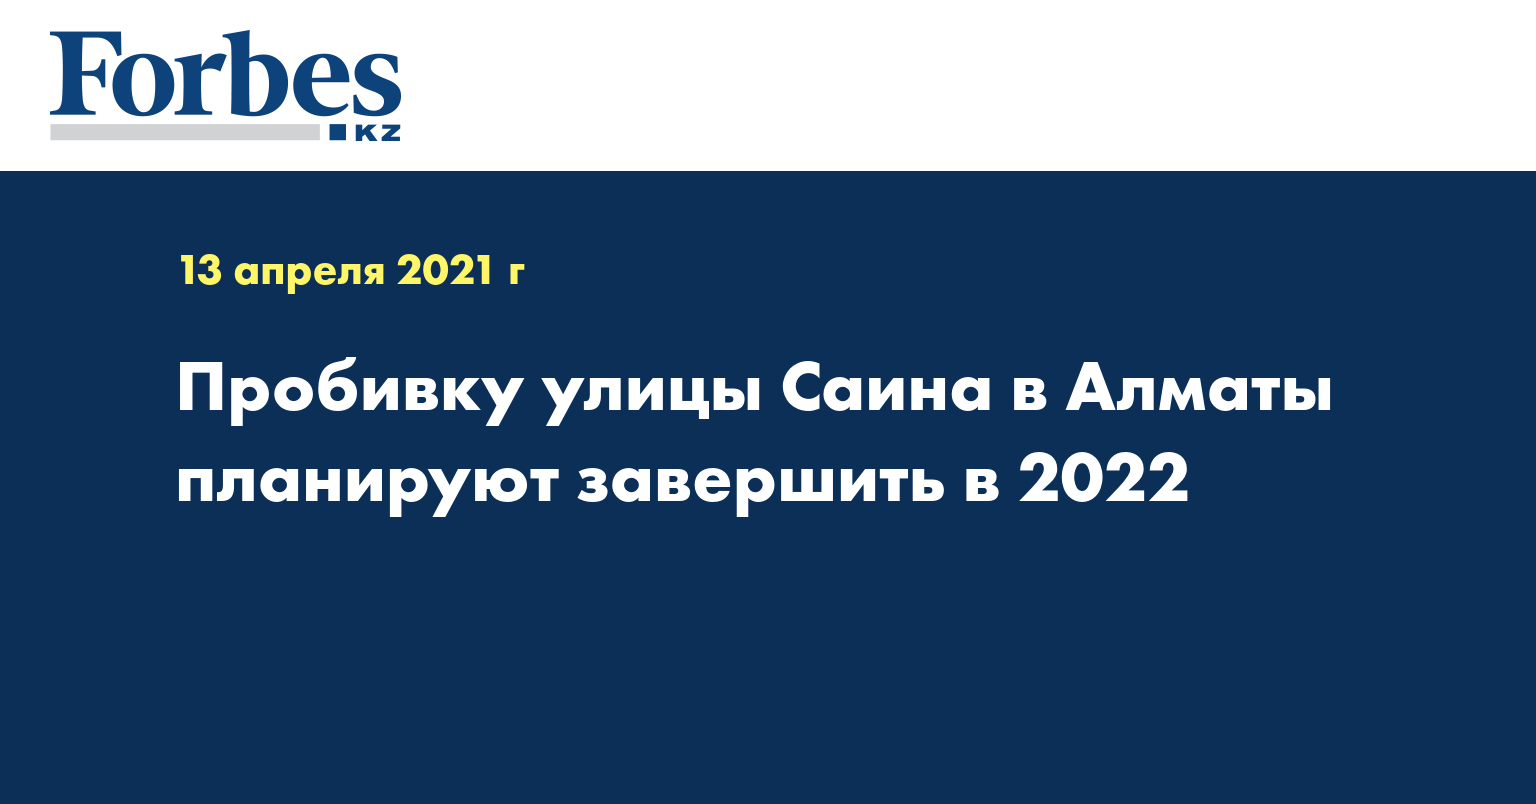  Пробивку улицы Саина в Алматы планируют завершить в 2022